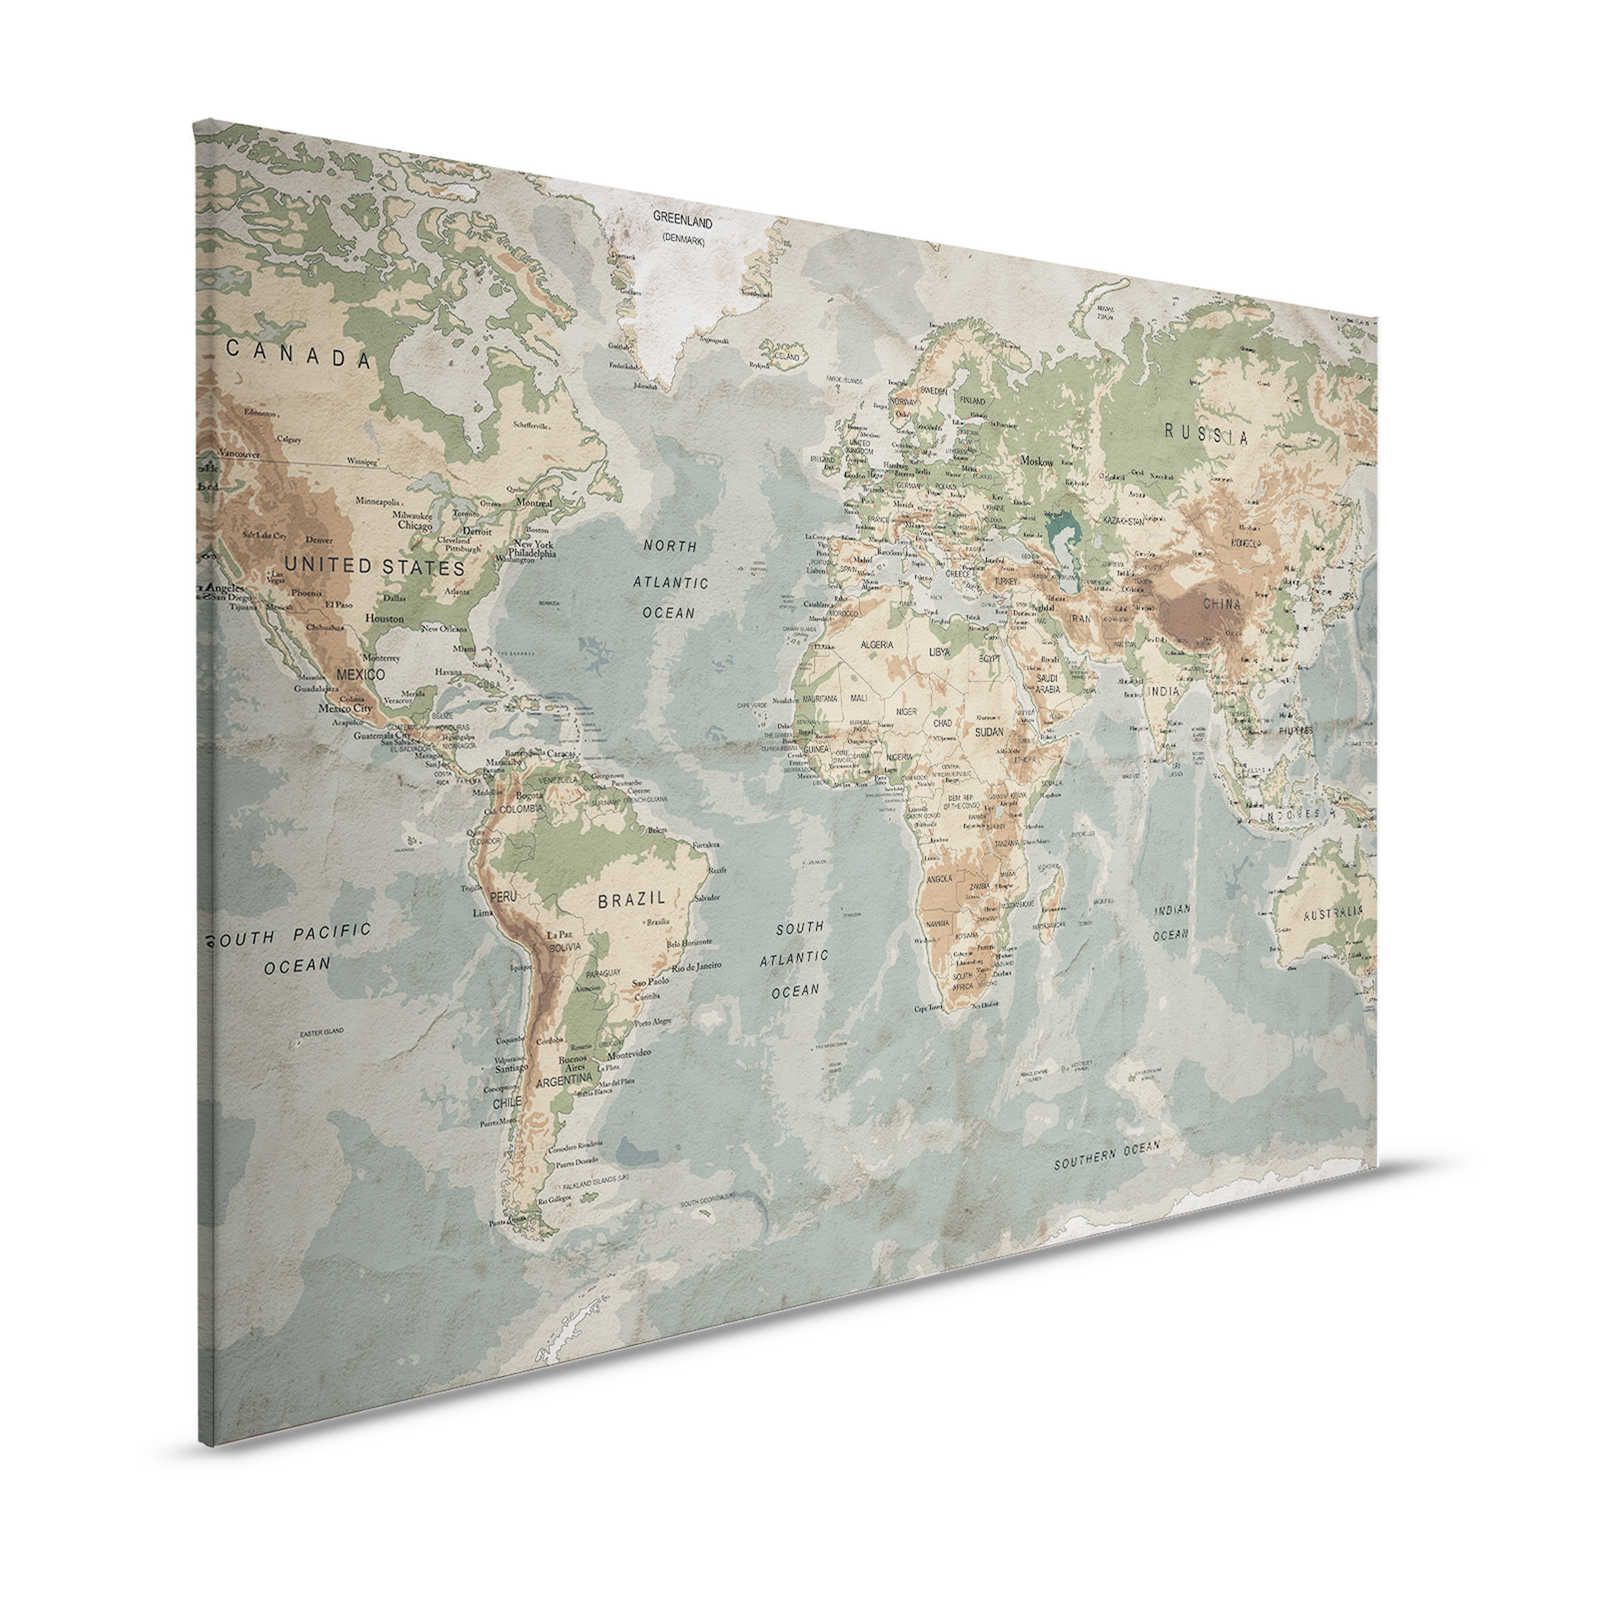 Quadro retrò su tela con mappa del mondo e design tipografico - 1,20 m x 0,80 m
